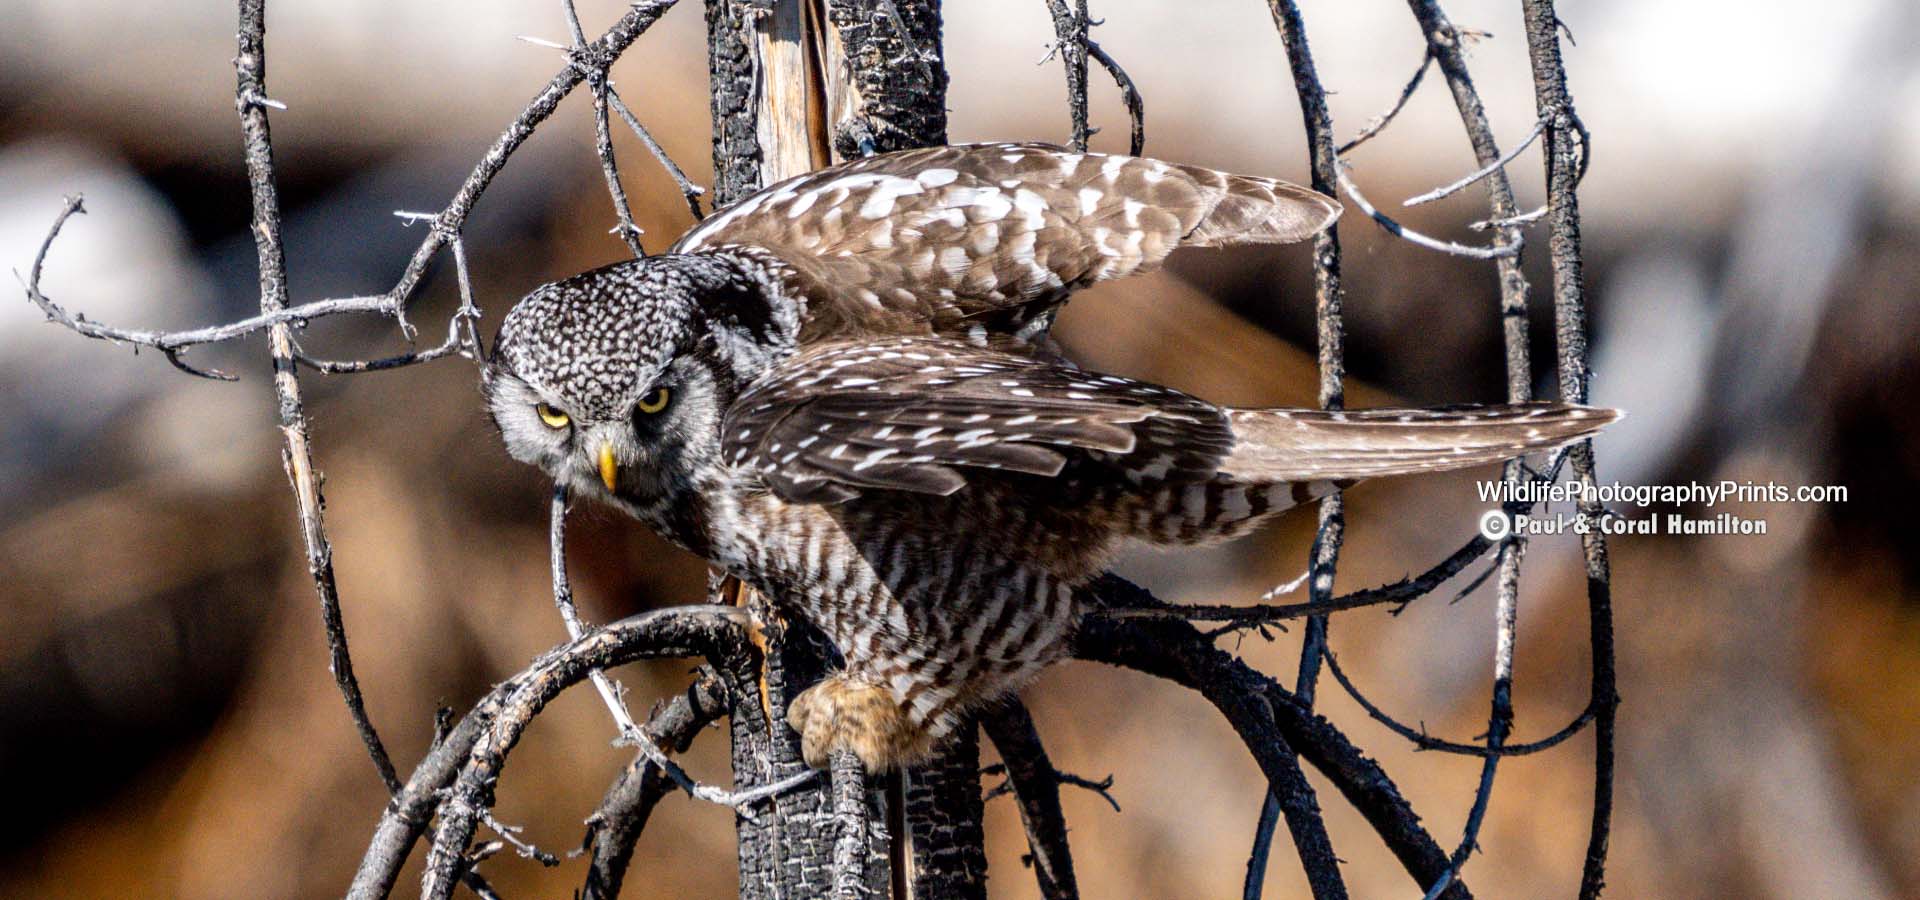 Owl Wildlife Photography Prints